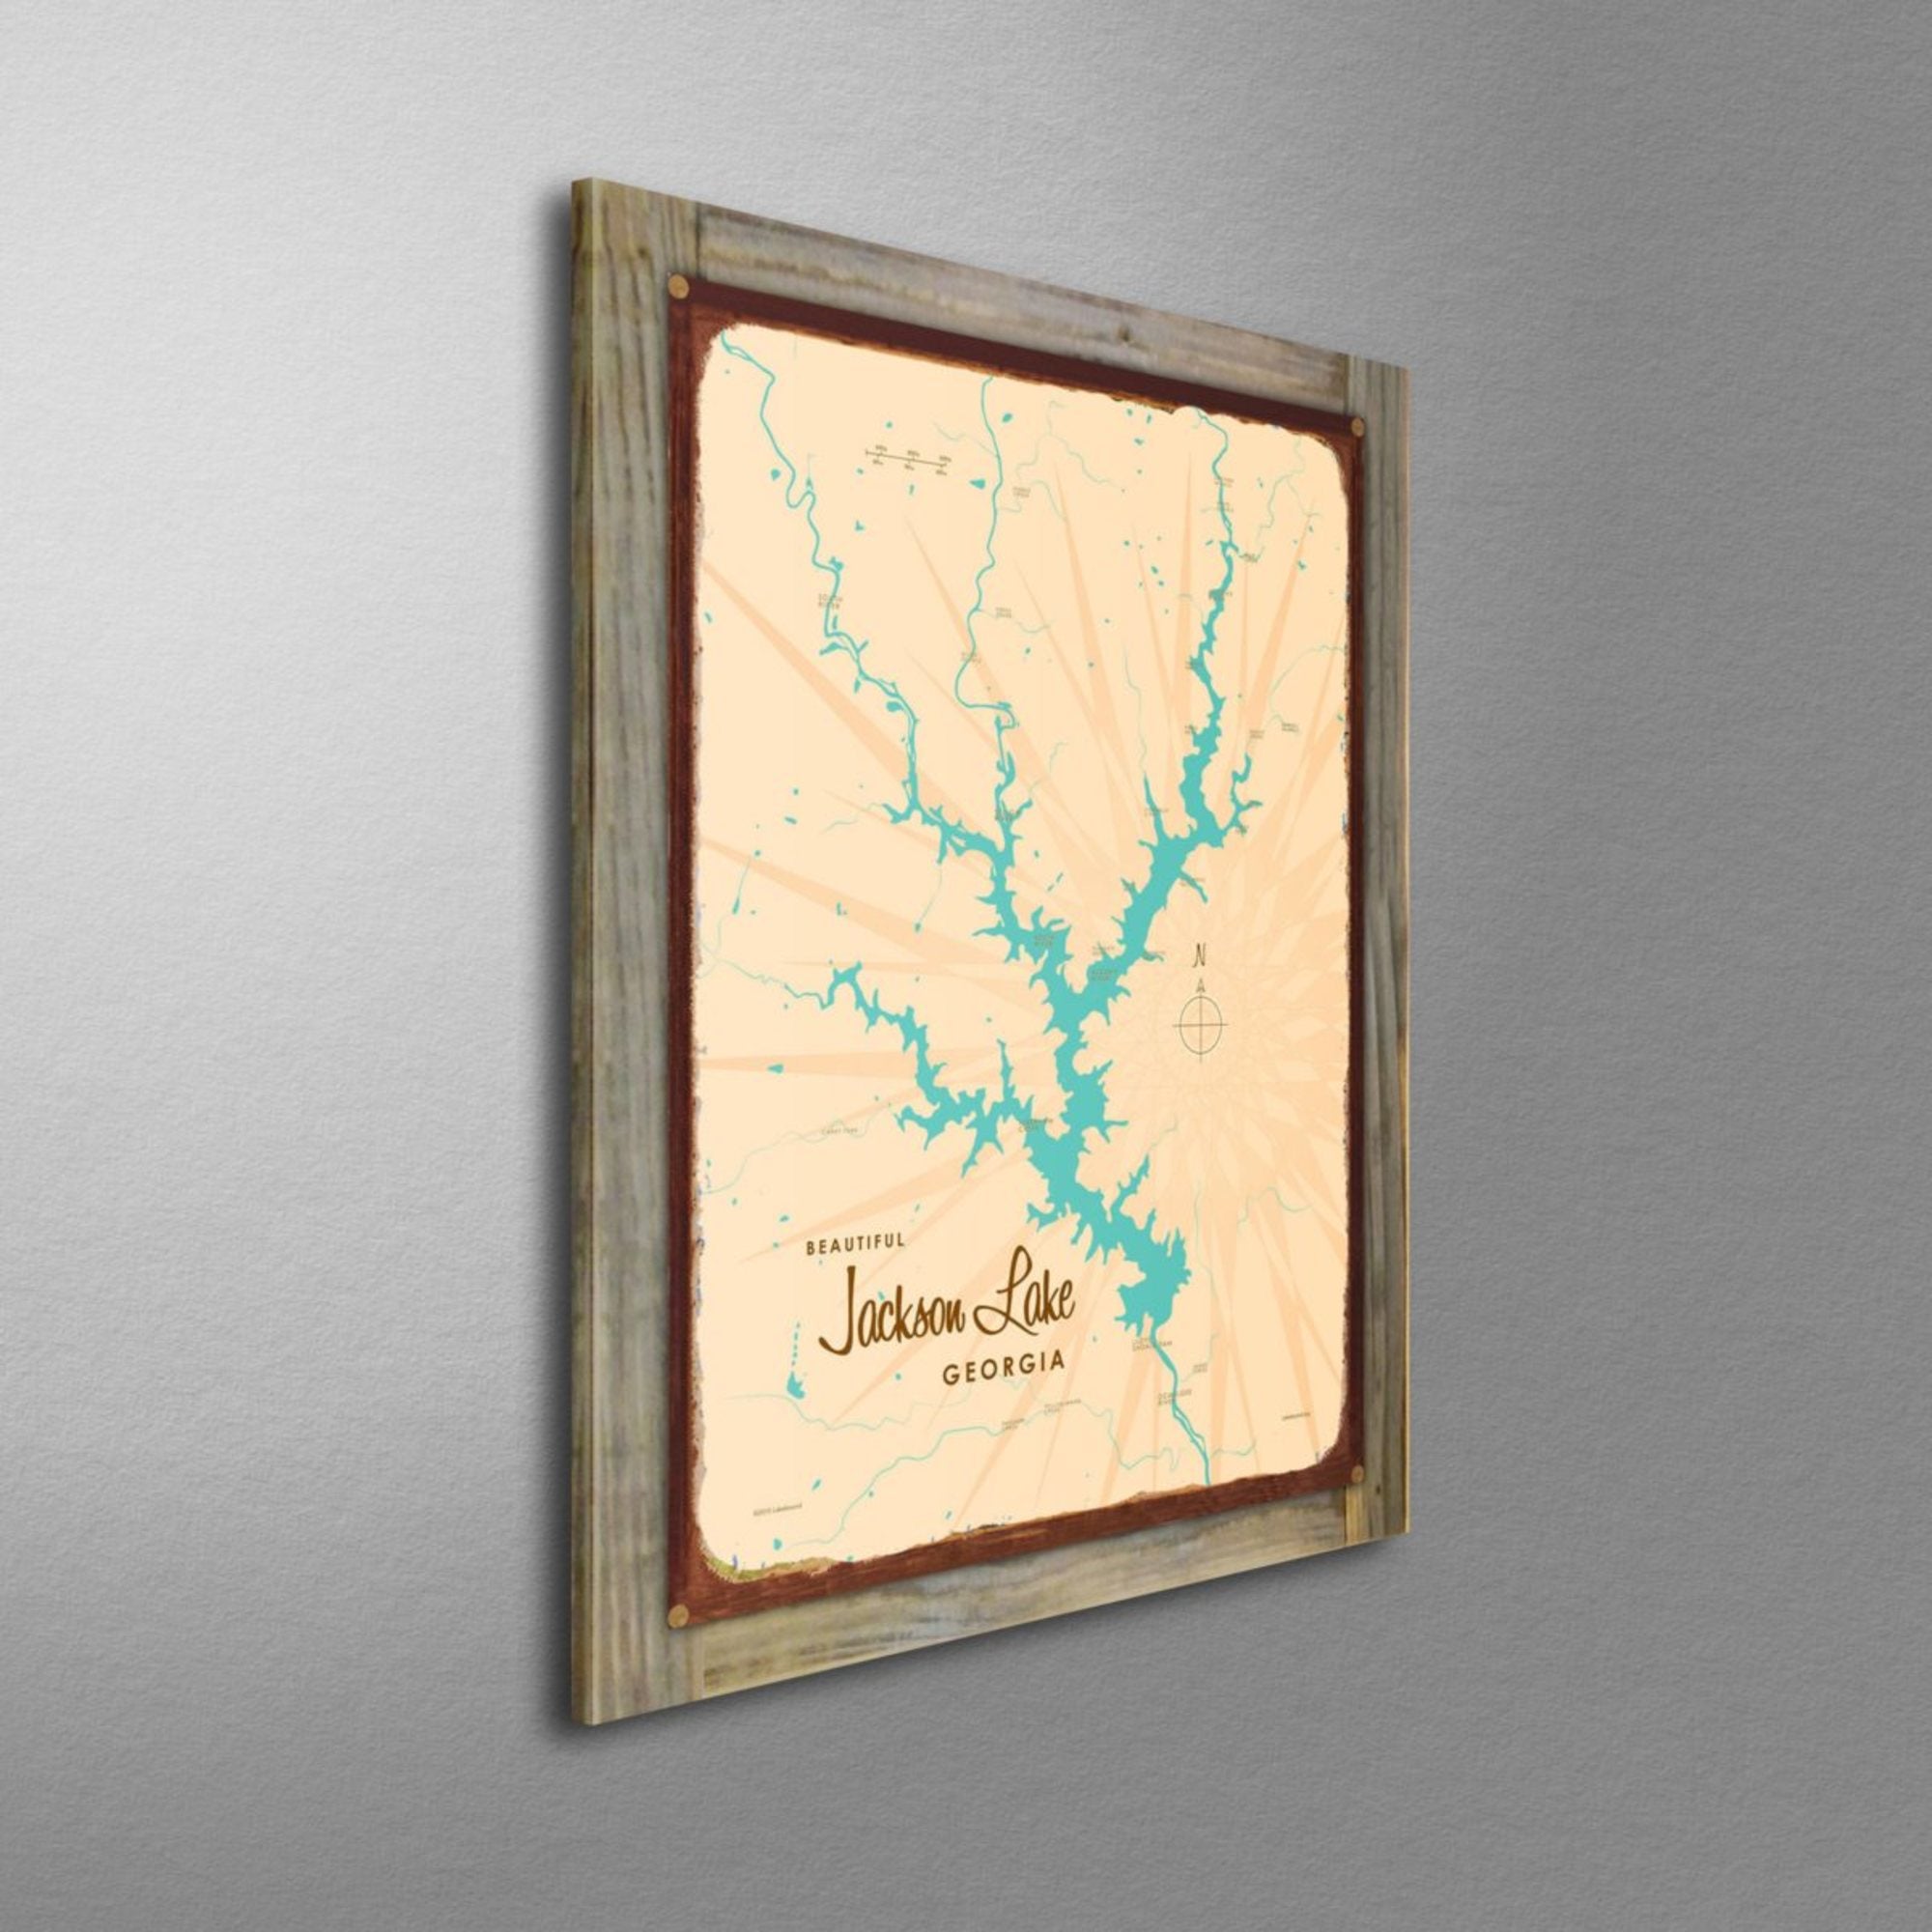 Jackson Lake Georgia, Wood-Mounted Rustic Metal Sign Map Art